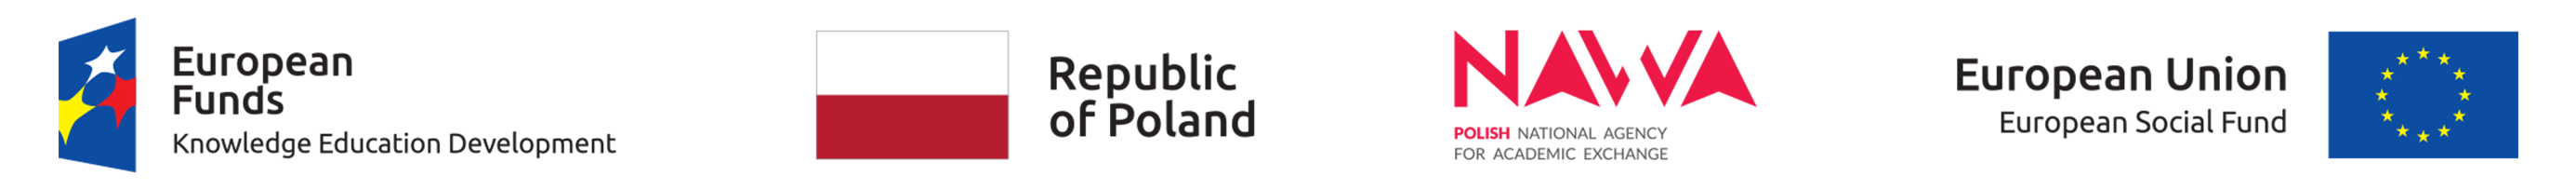 POWER logos: European Funds Konwledge Education Development, Flag Poland, logo Polish national Agency Por Academic Exchange, European Union - European Social Found  